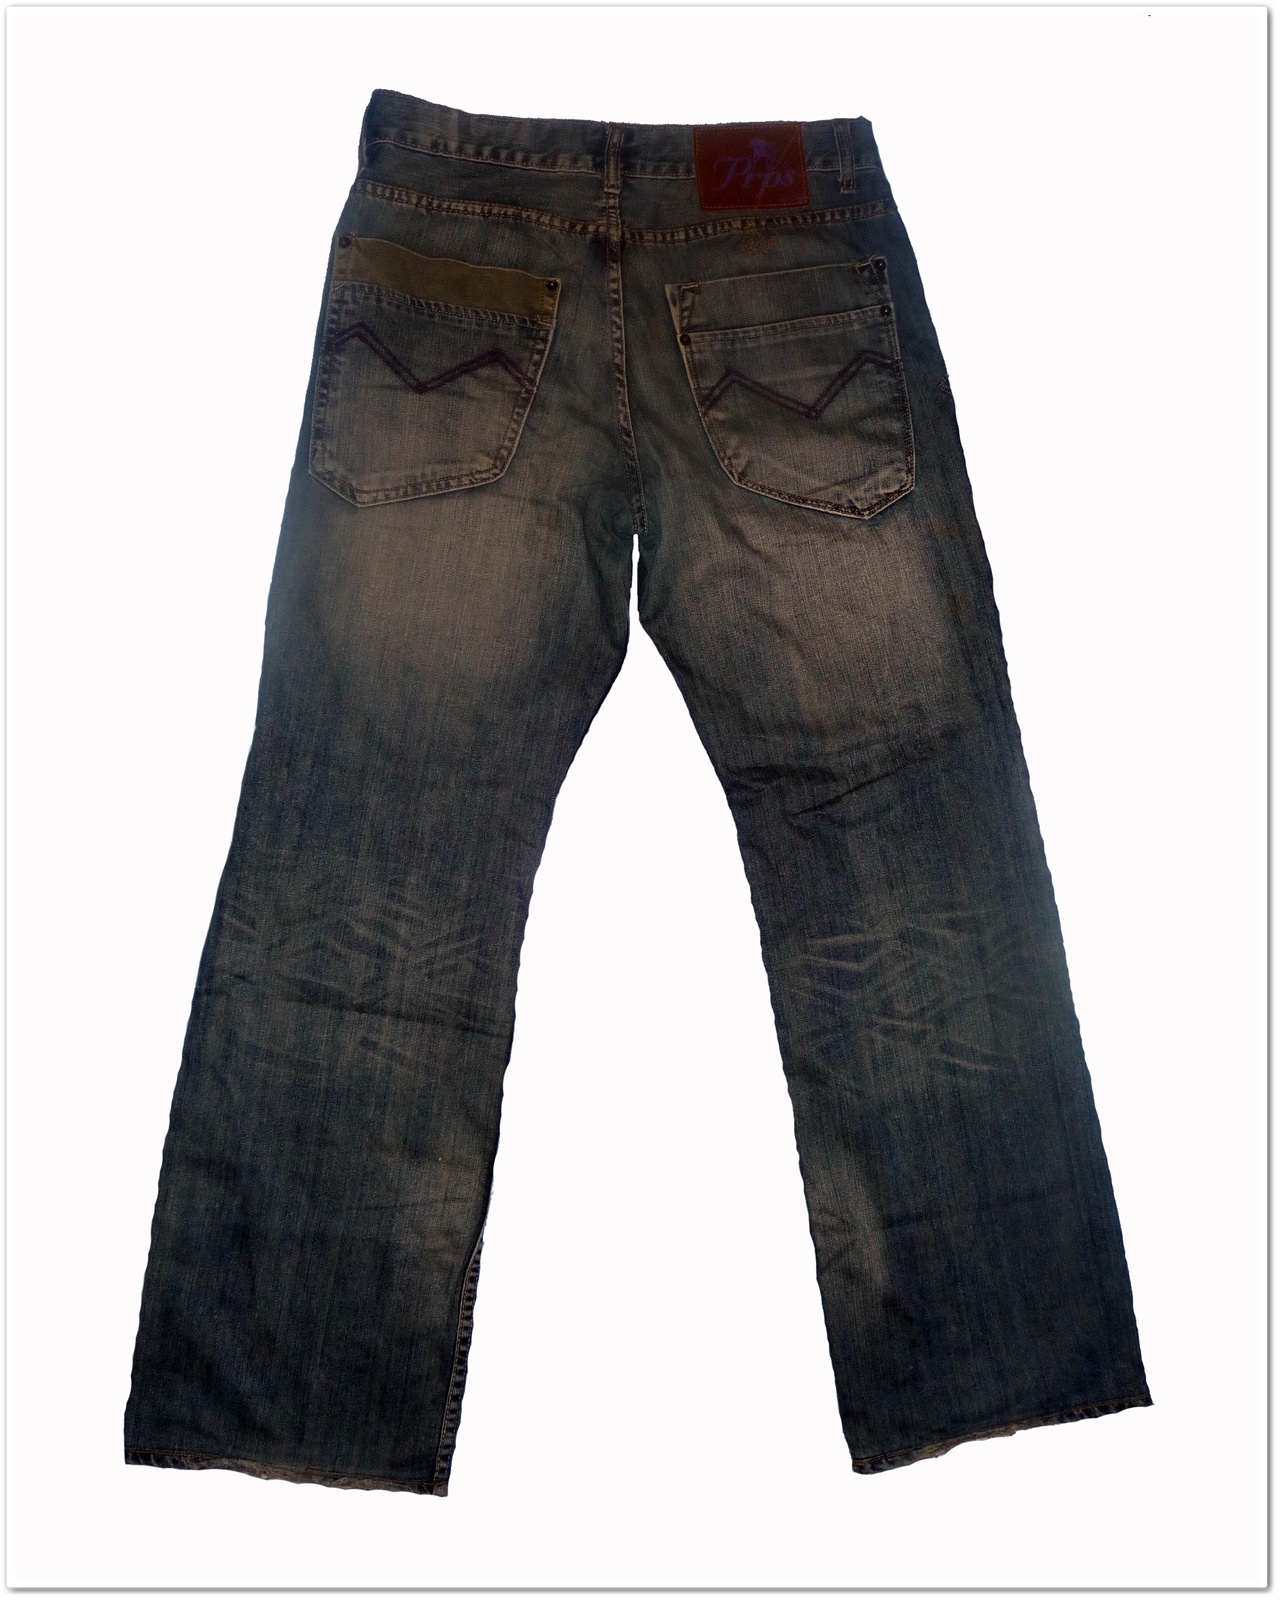 Dallek Shop - Bundle Online Shoping: PRPS Jeans